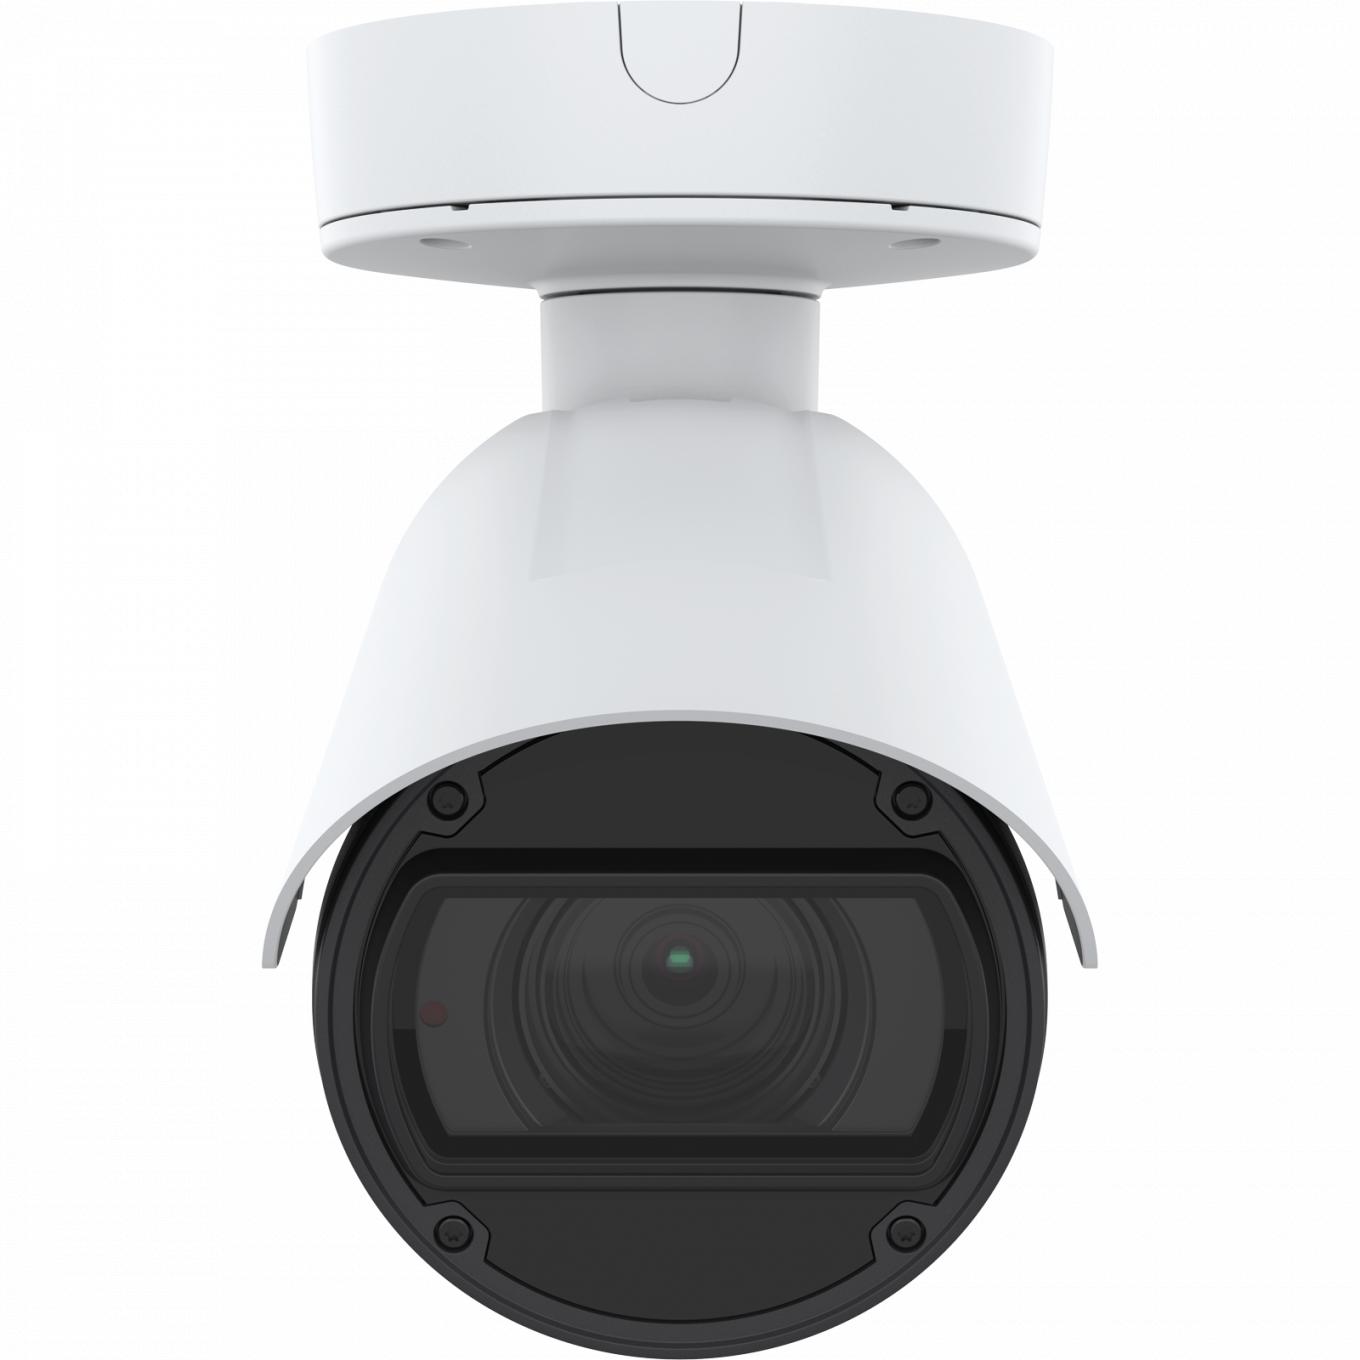 AXIS Q1785-LE IP Camera è dotata di OptimizedIR. Il dispositivo è visto dalla parte anteriore.